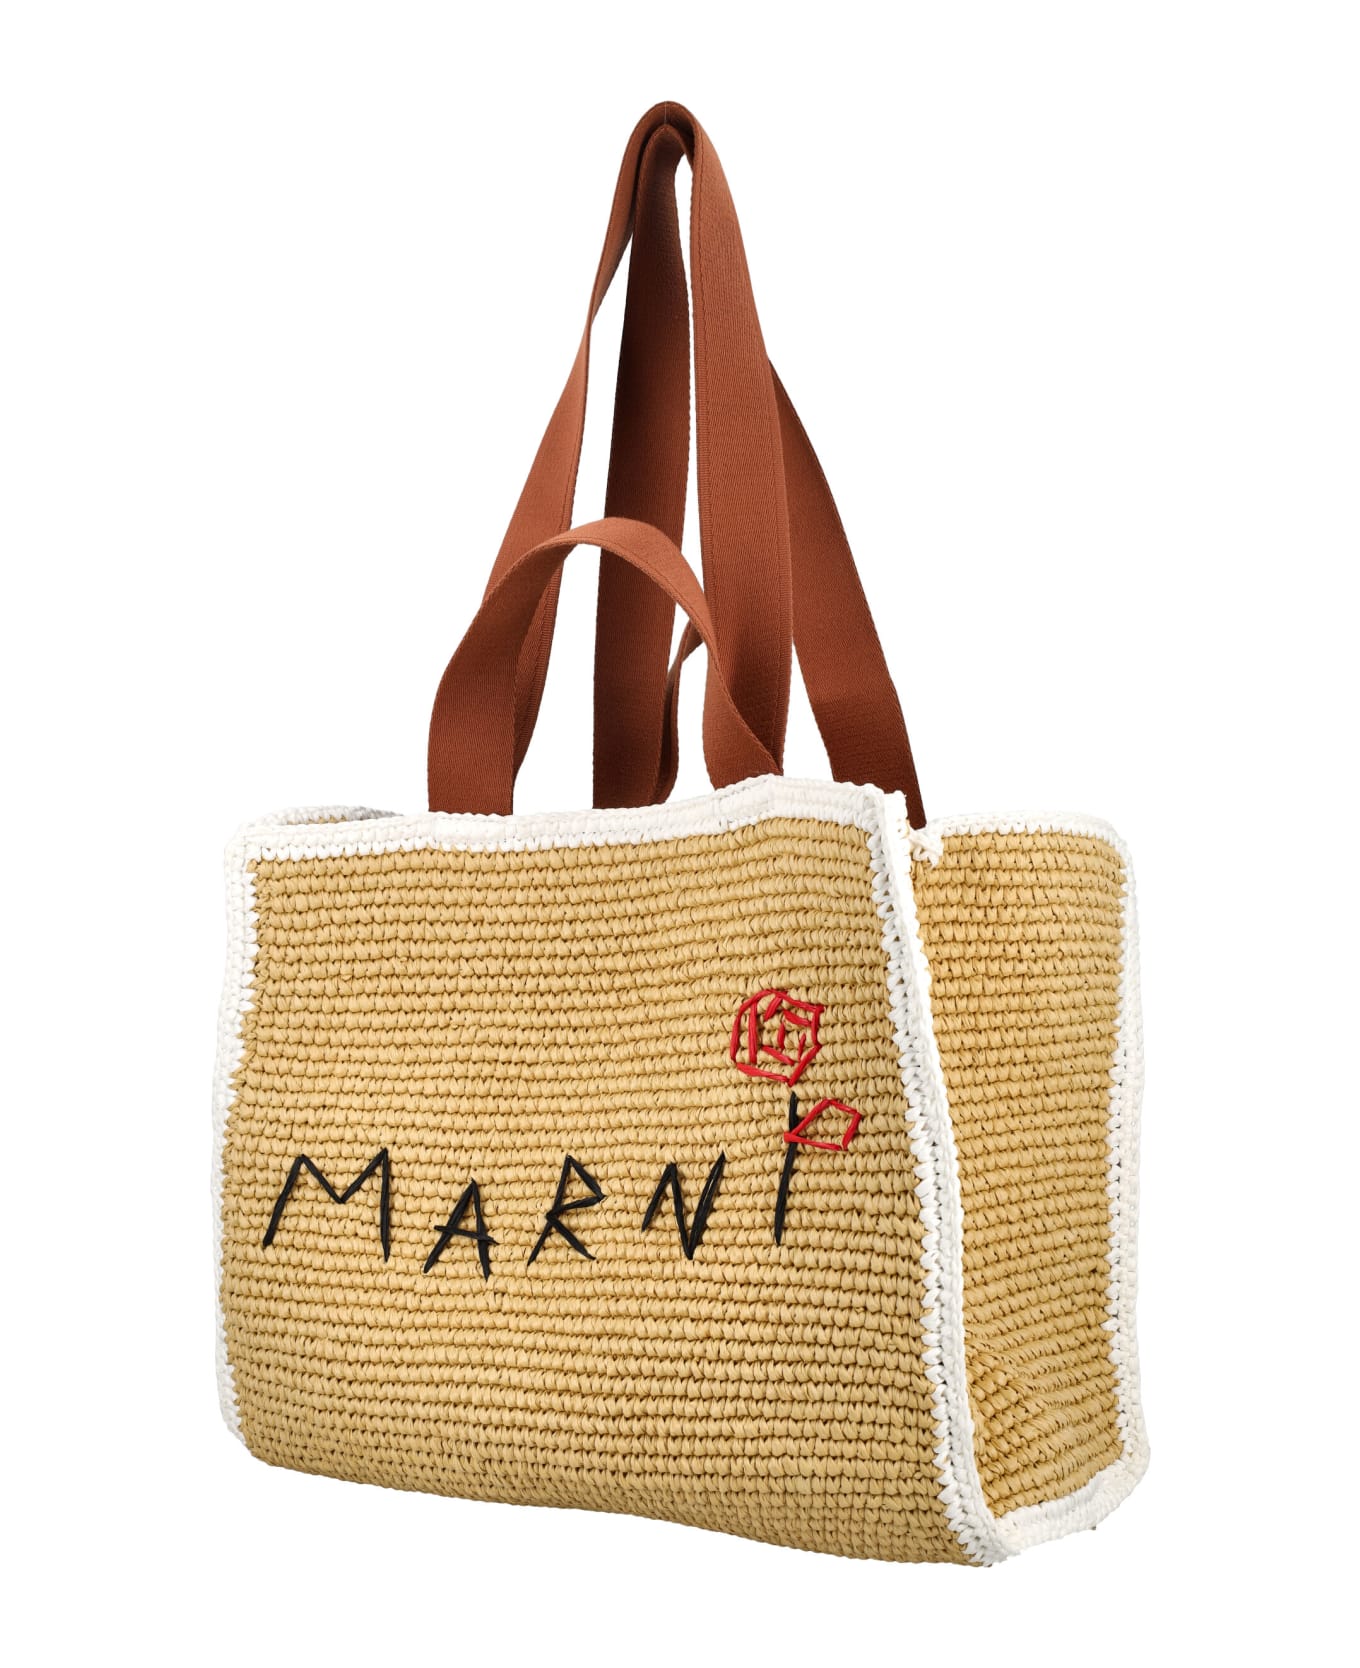 Marni Sillo Medium Shopper - Natural/white/rust